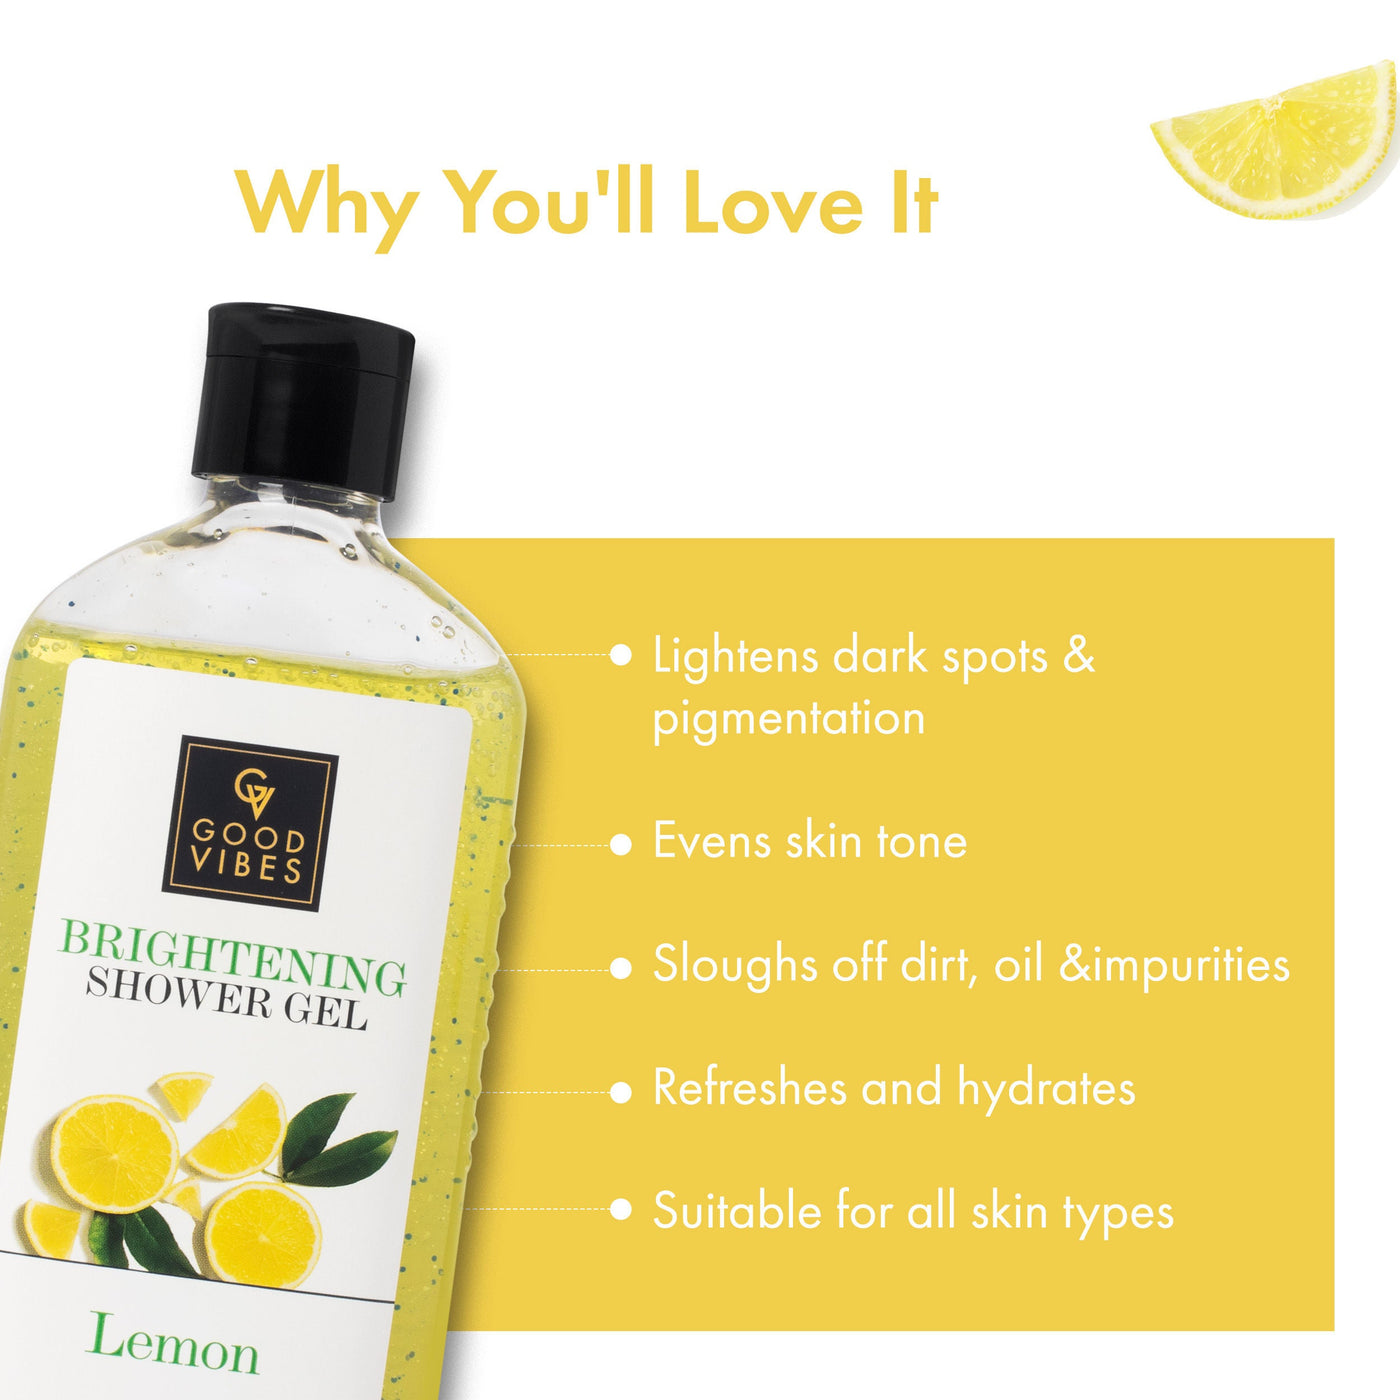 good-vibes-brightening-shower-gel-lemon-300-ml-4